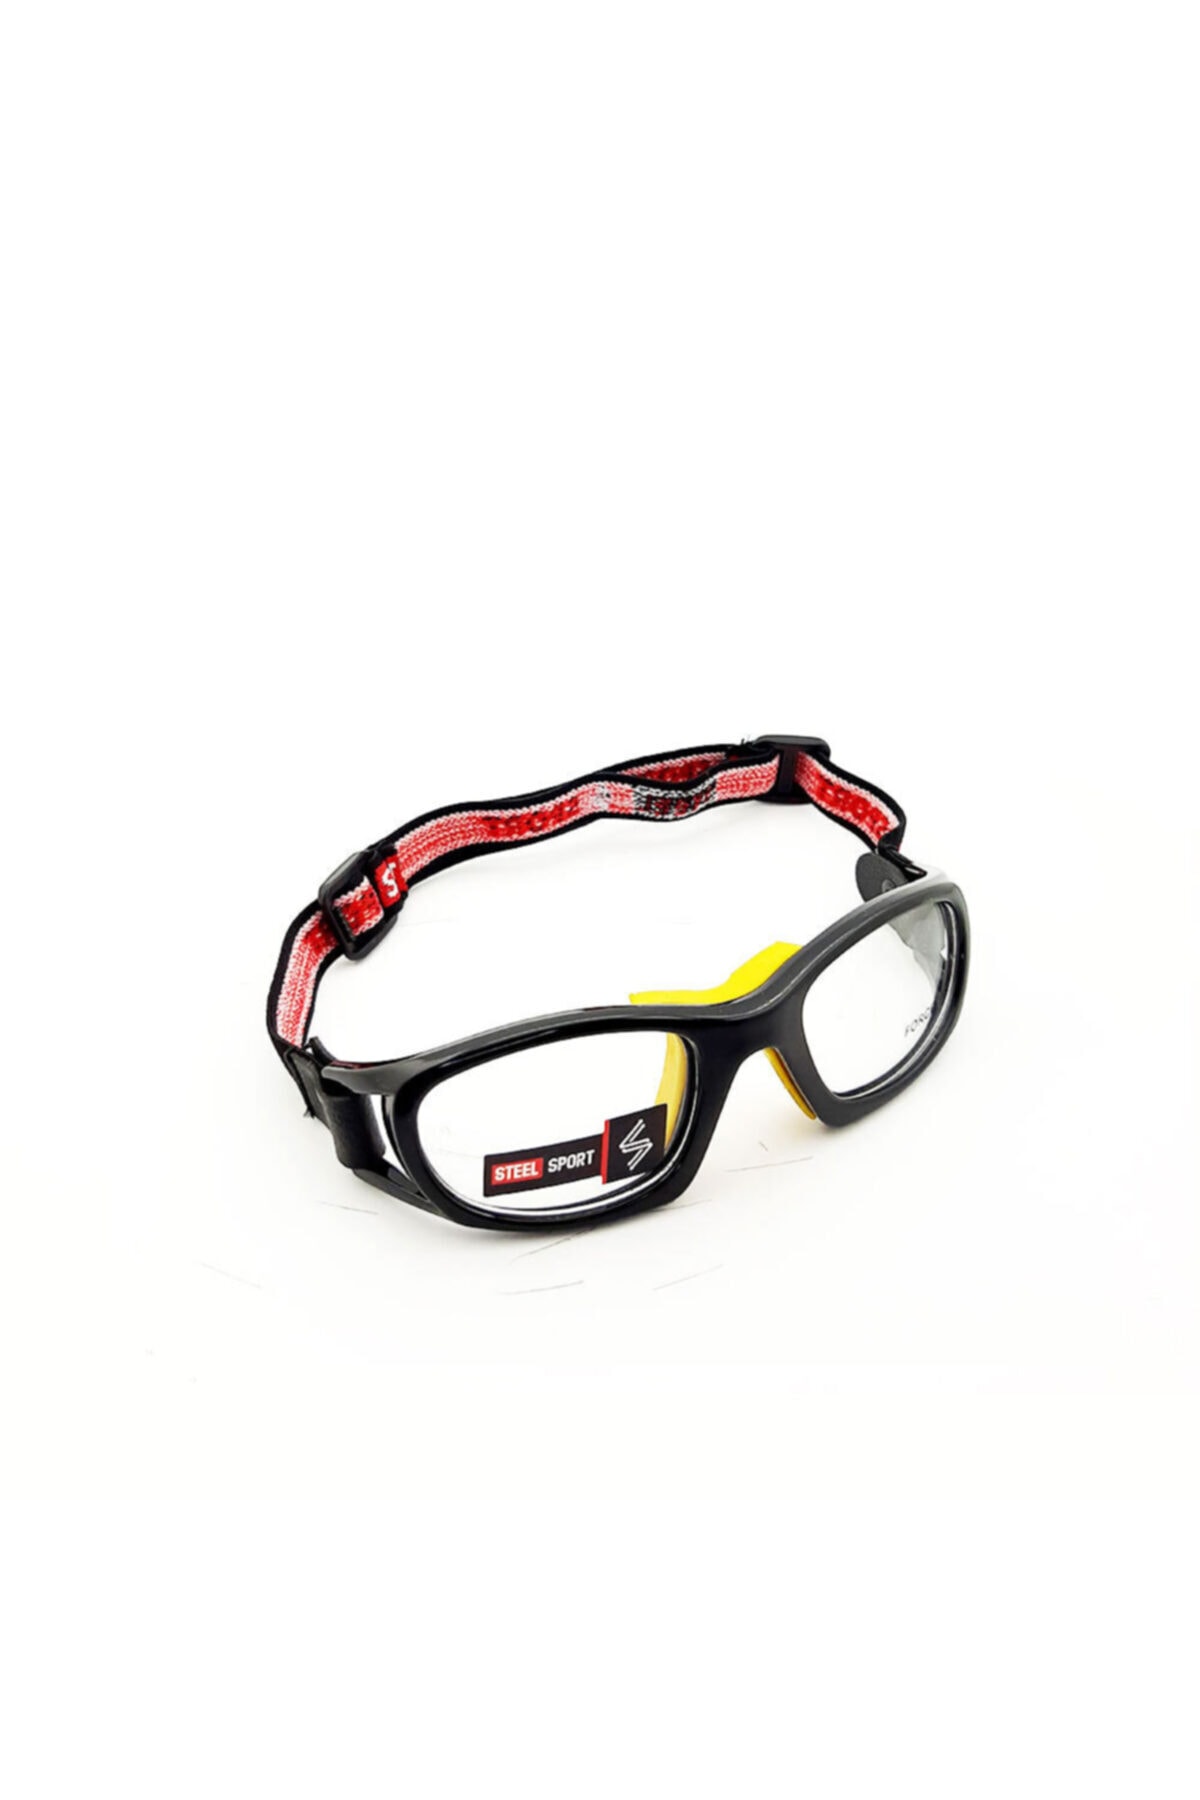 Steel Sport Force Parlak Metalik Siyah – Sarı Ped [12 Yaşa Kadar] Numaralı Olabilen Sporcu Gözlüğü